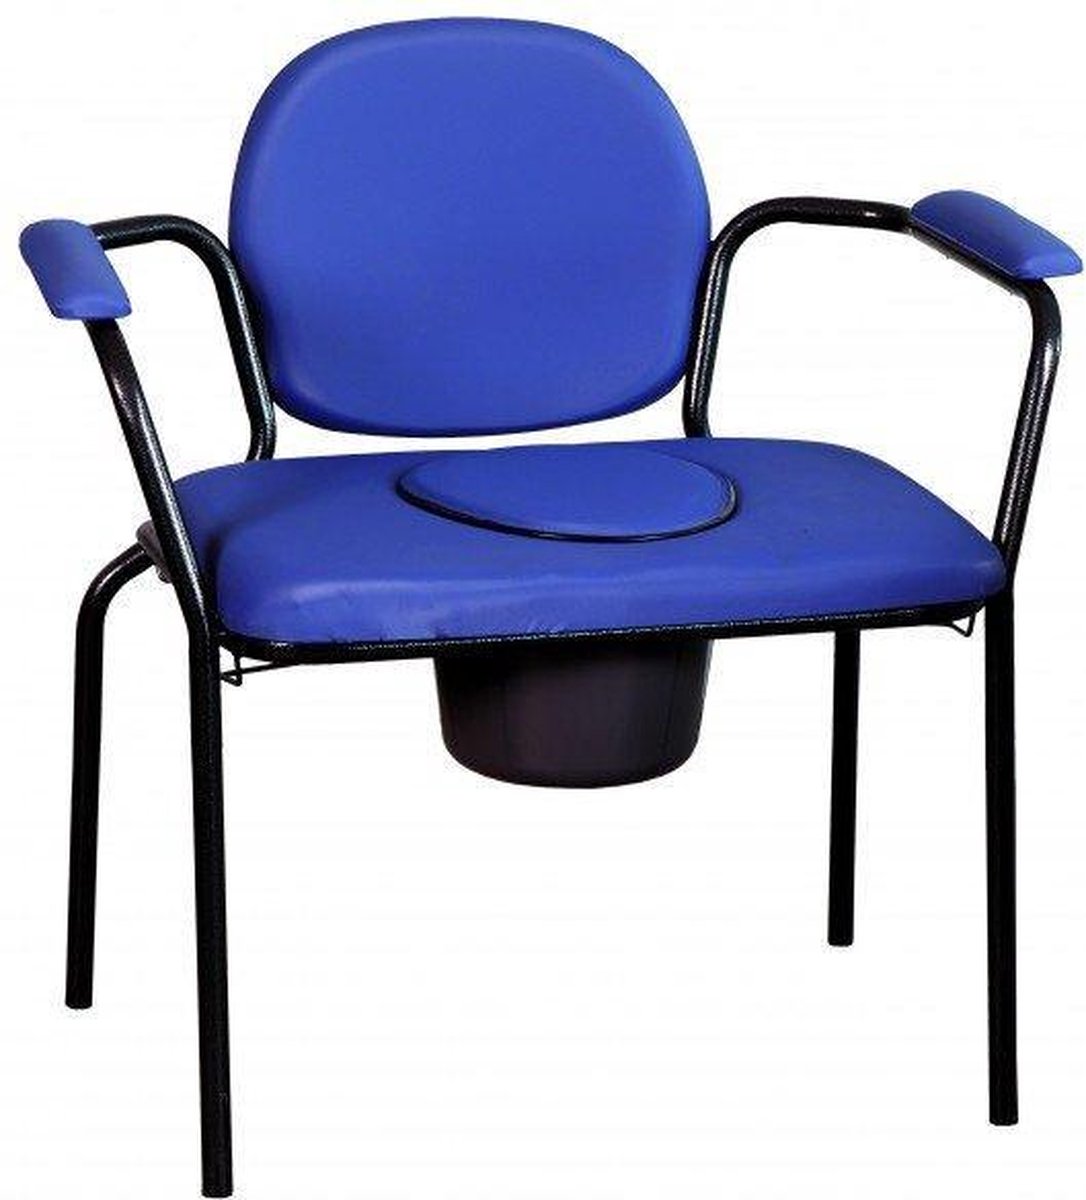 Toiletstoel XL - Po stoel XXL - WC stoel blauw - Extra breed met zachte zitting - Herdegen